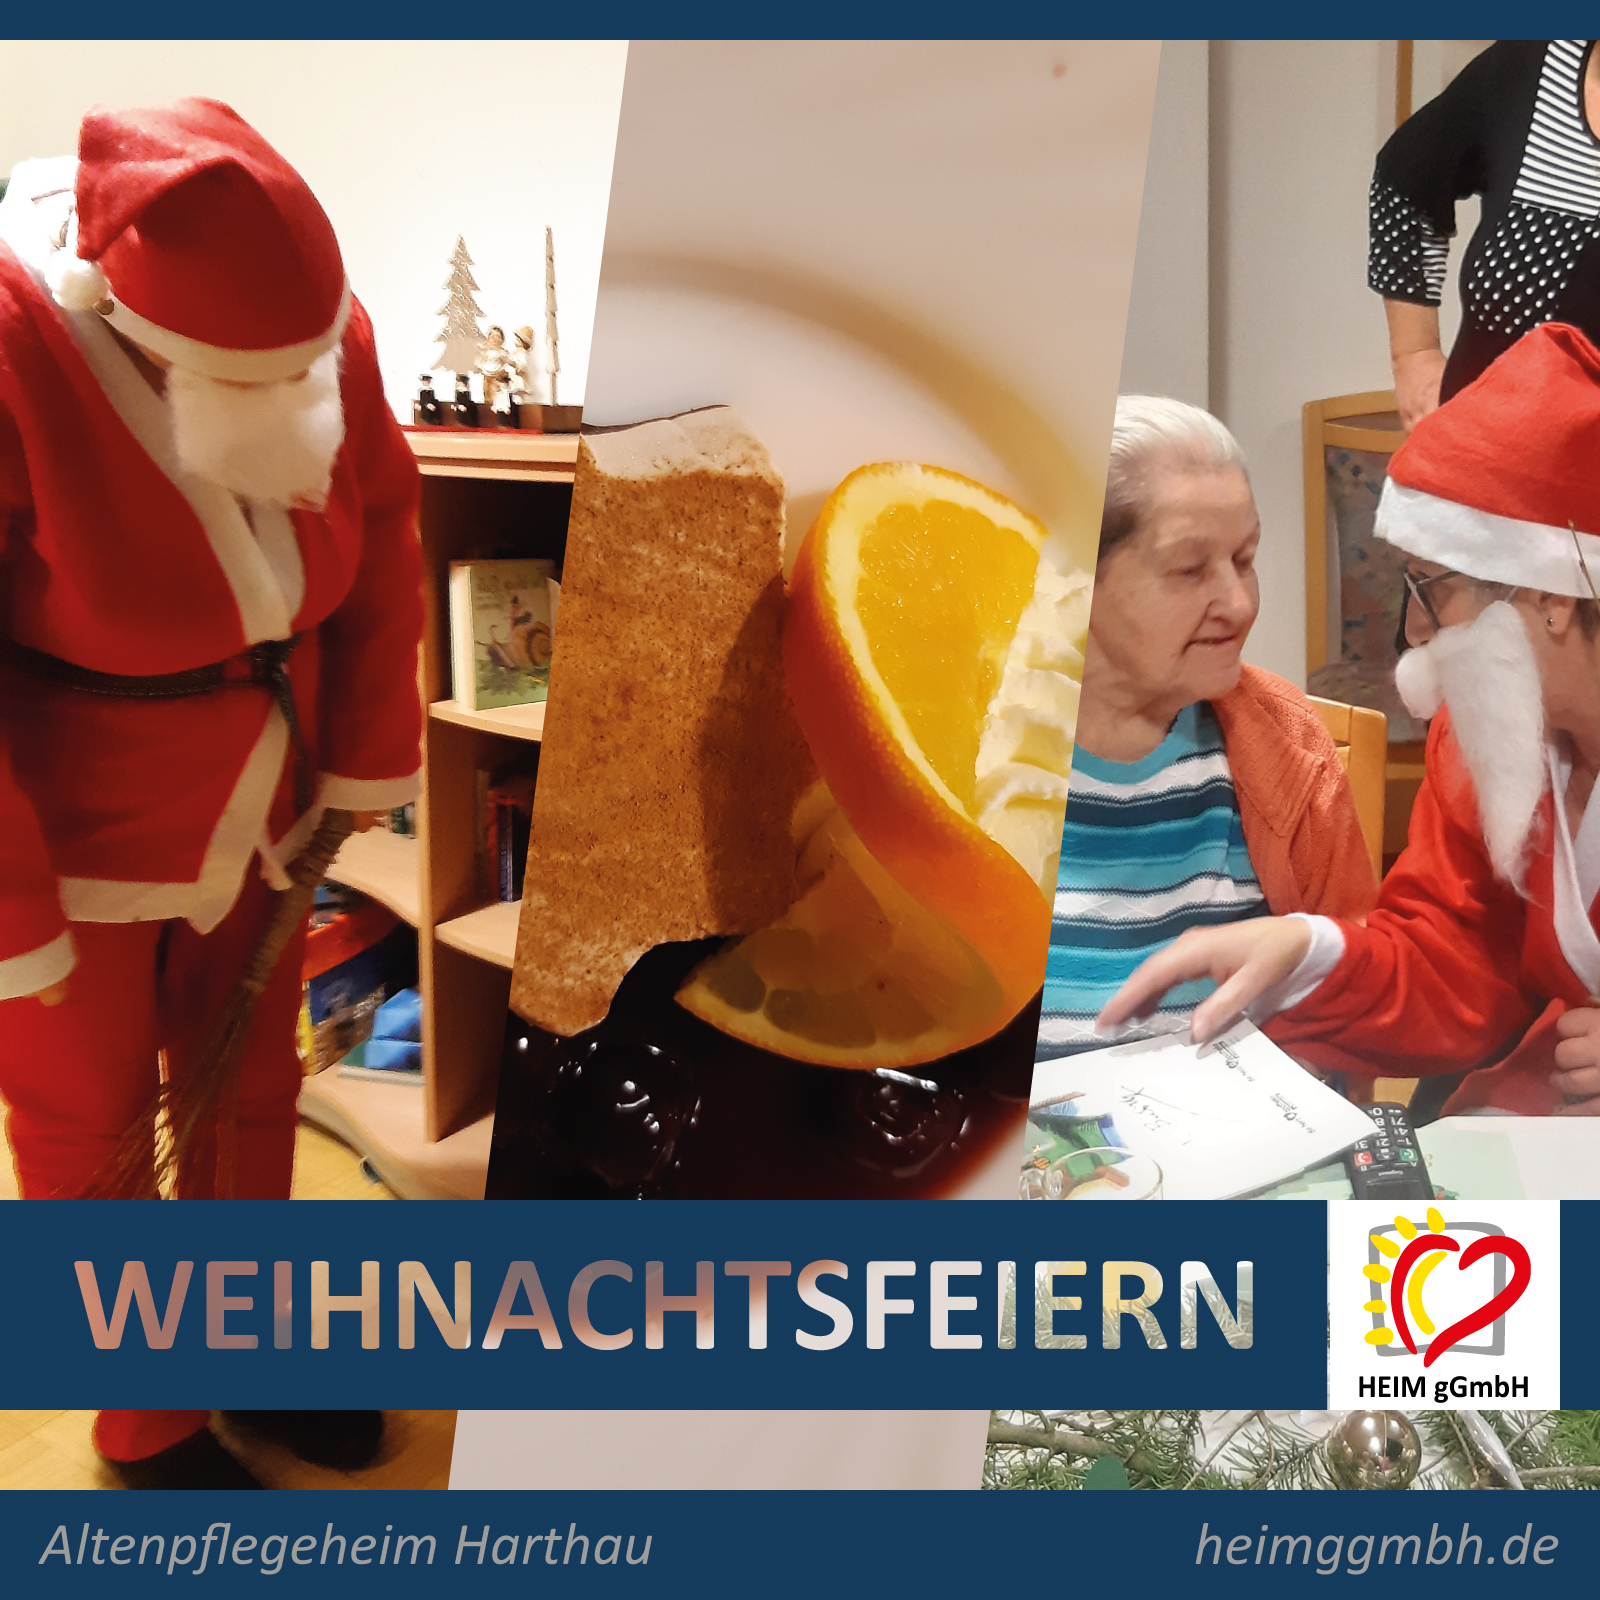 Drei Tage, drei Wohnbereiche, drei Feiern - Weihnachten im Altenpflegeheim Harthau der HEIM gemeinnützigen GmbH